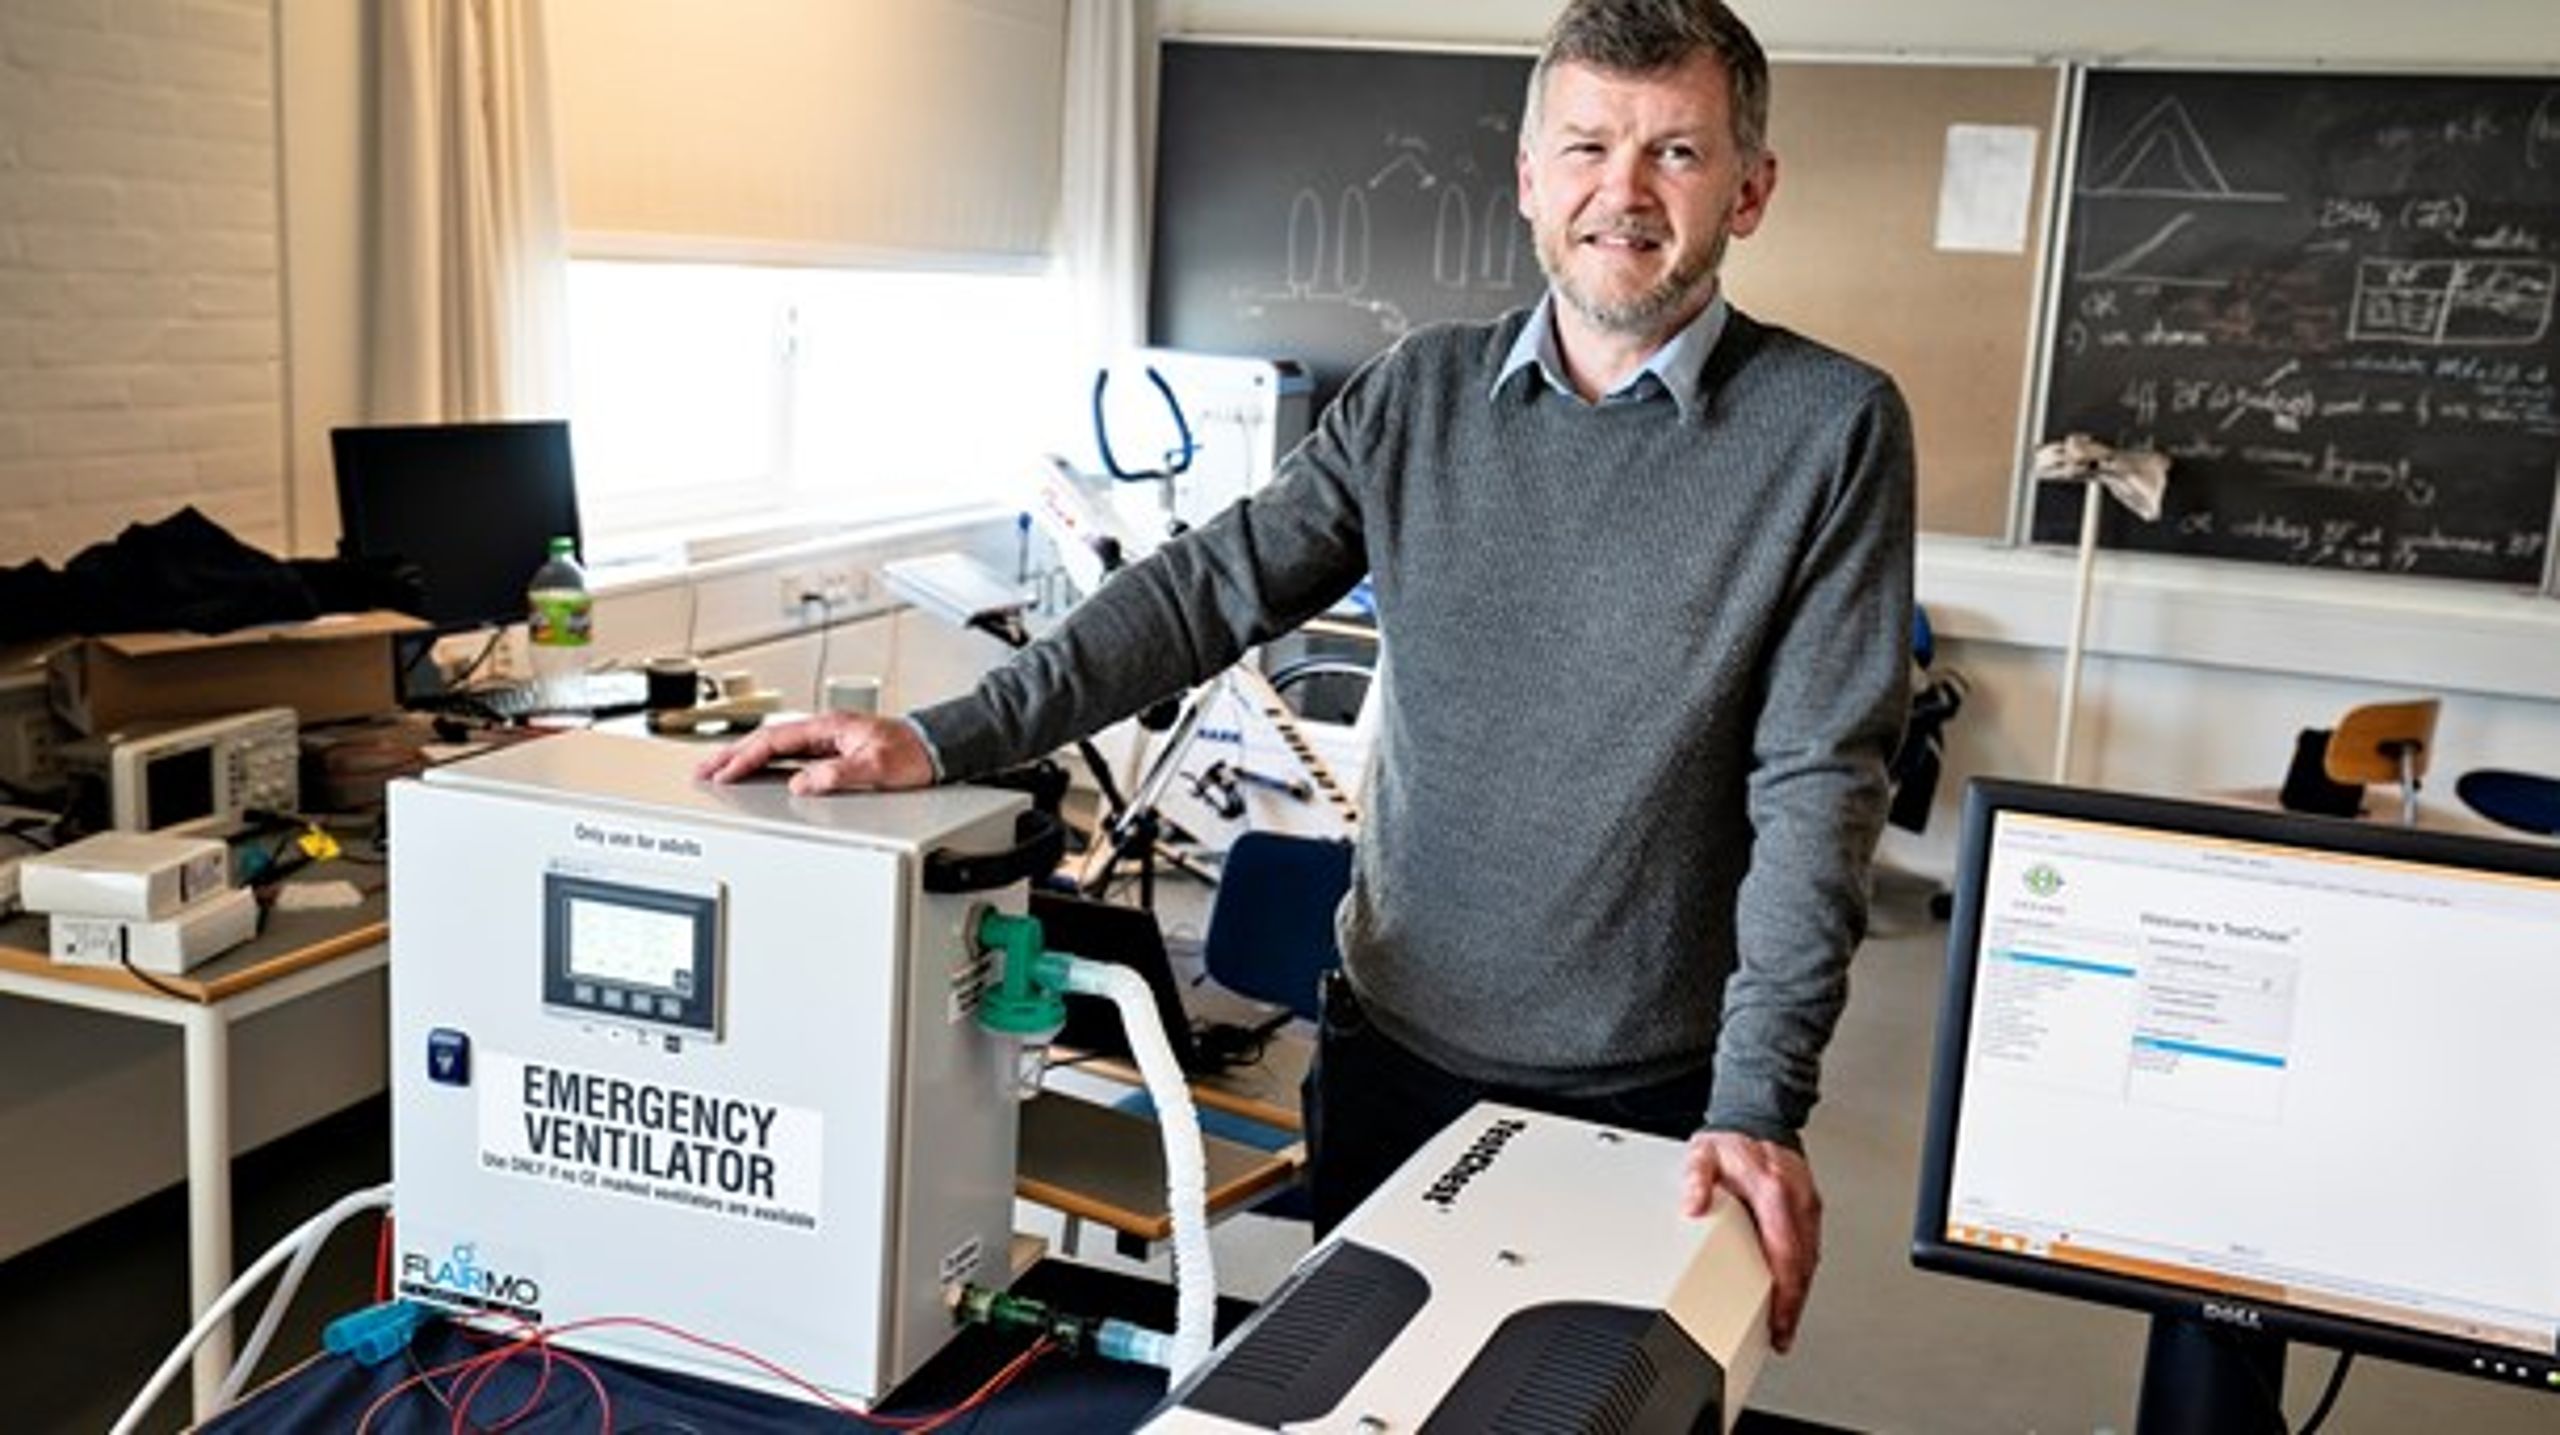 Nødrespirator, som en forskergruppe i Aalborg har udviklet i forbindelse med coronakrisen.